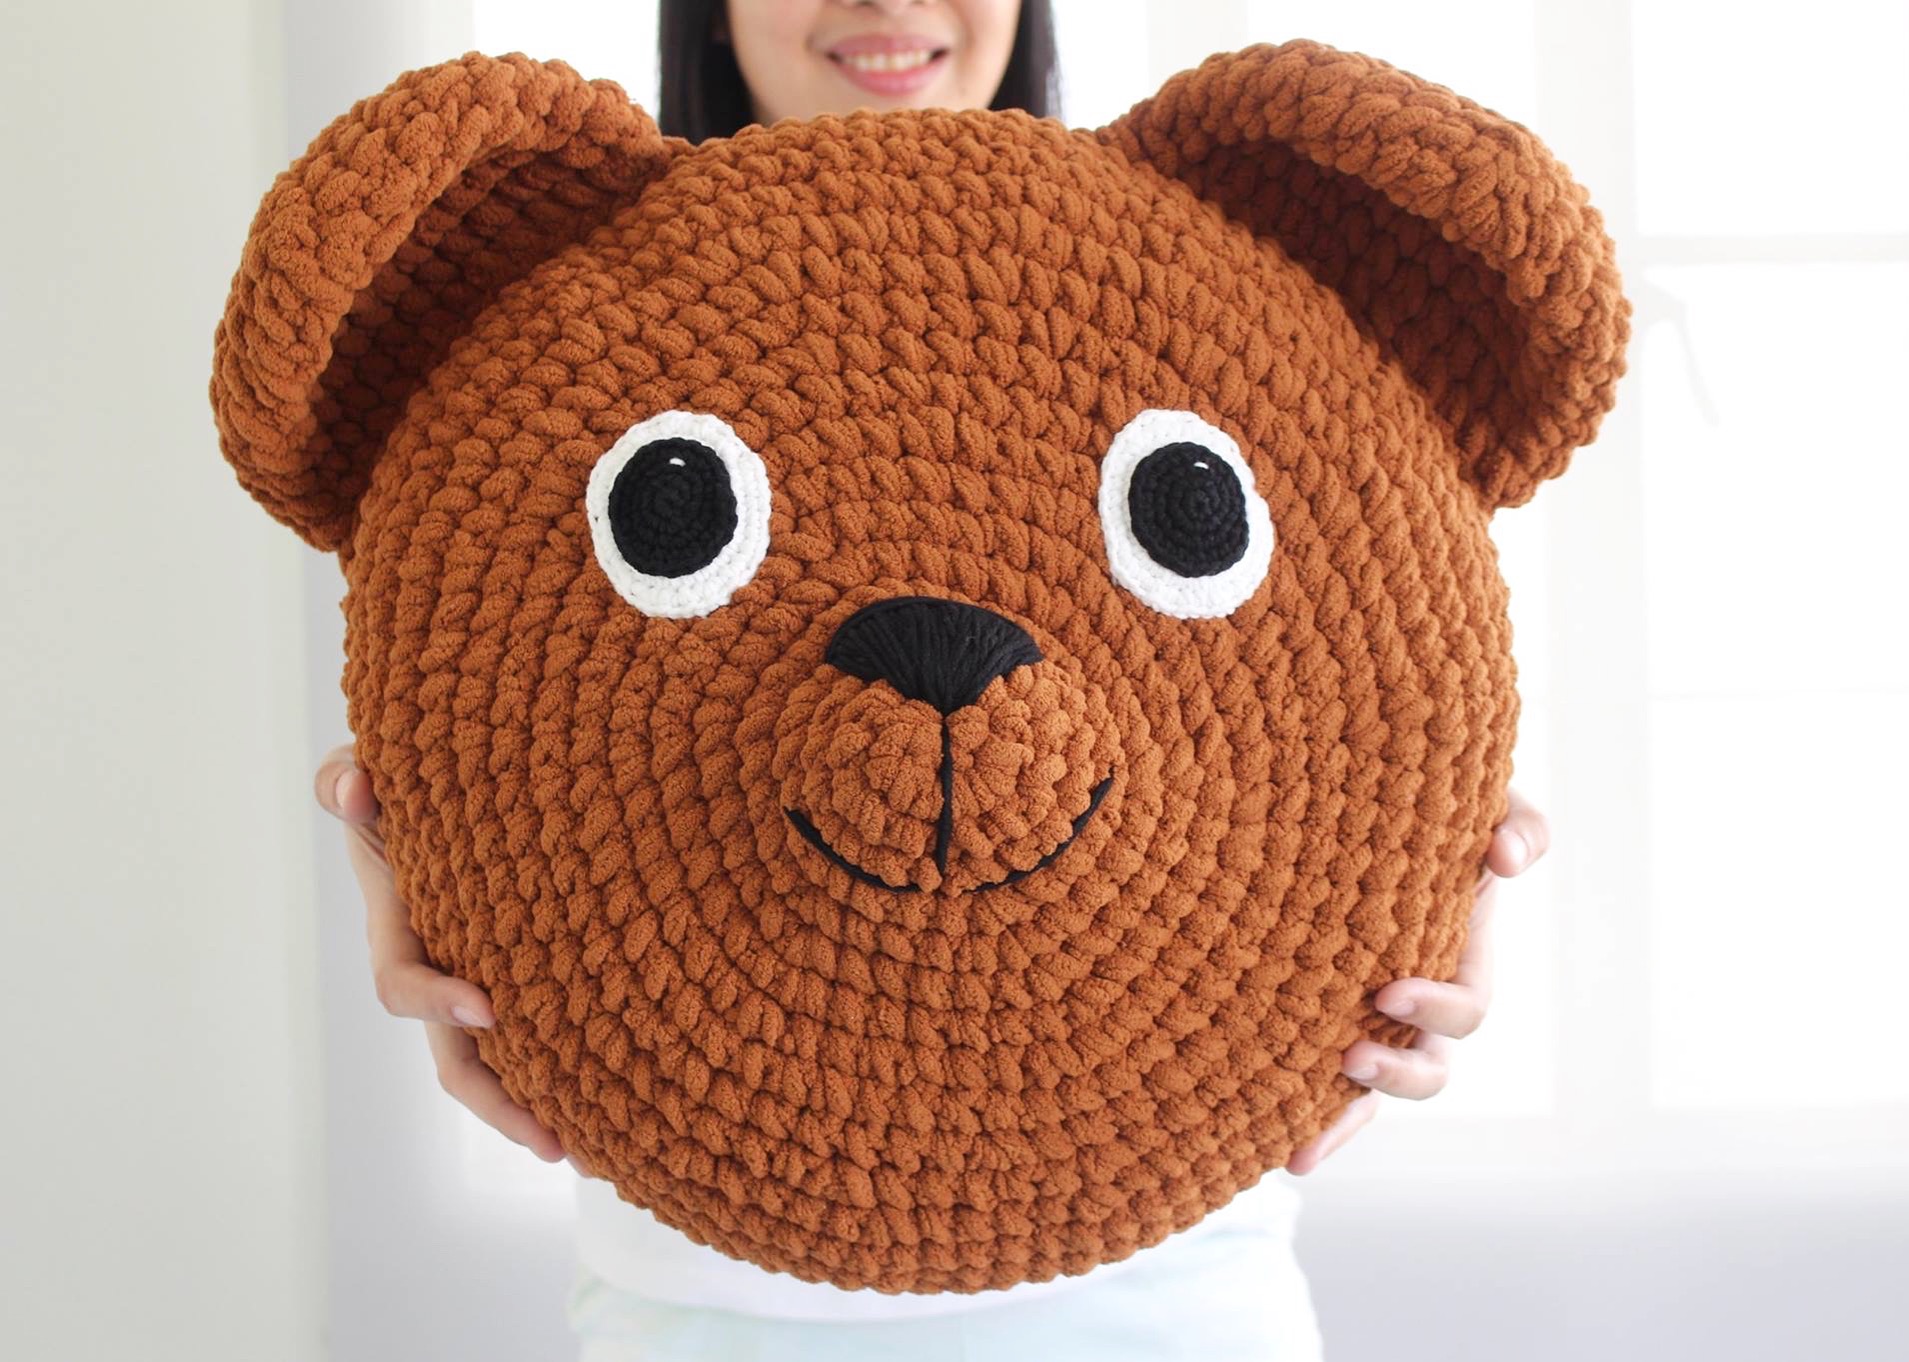 crocheted teddy bear